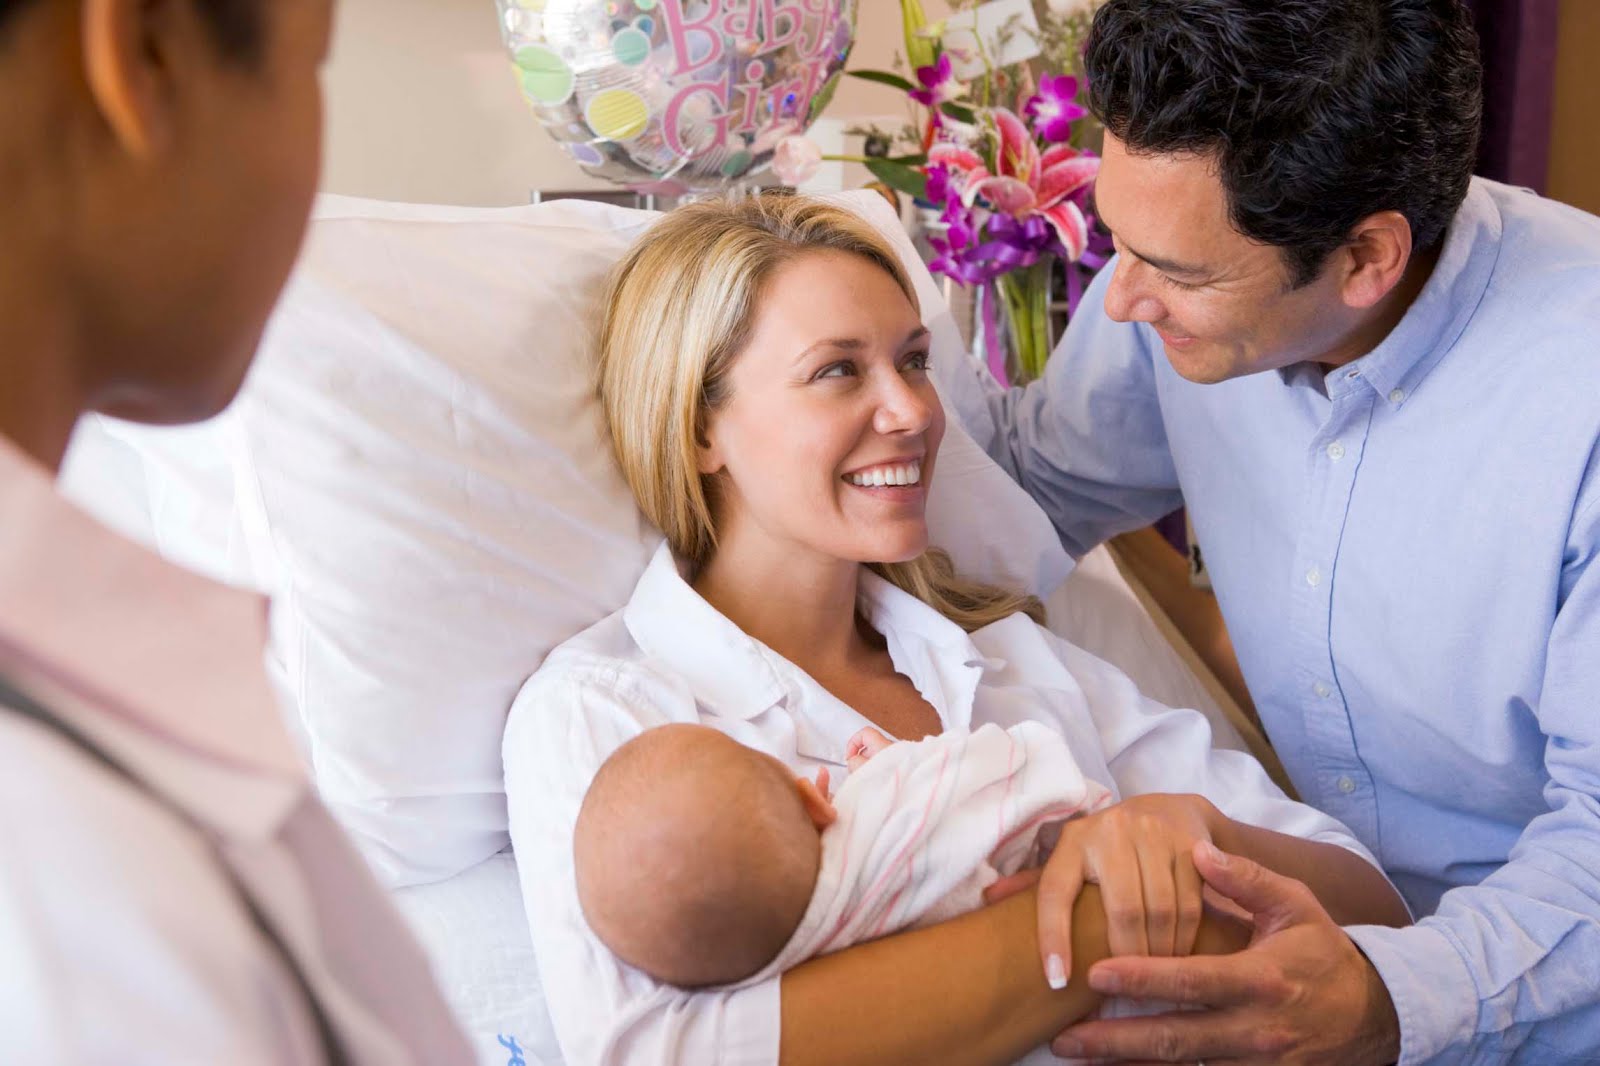 reglas básicas que deben cumplir al visitar a tú bebé recién nacido